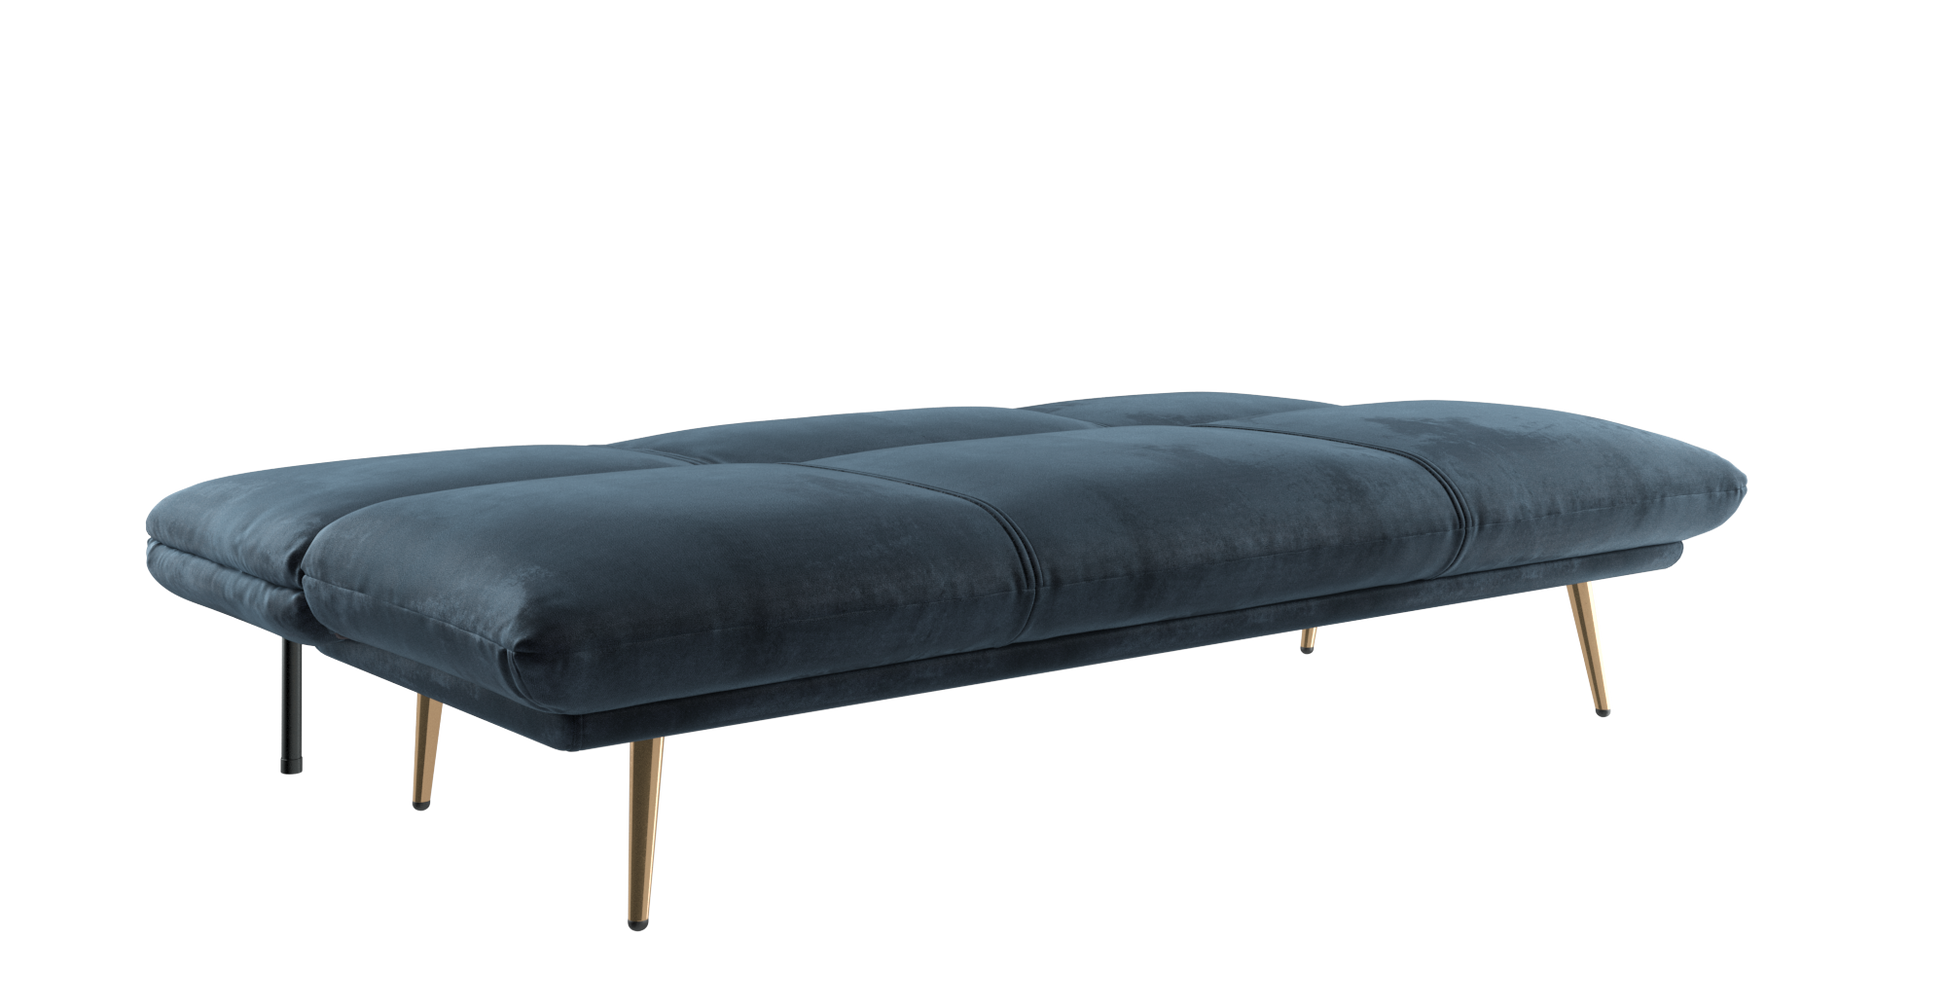 Brosa Lana Sofa Bed (Navy Blue)